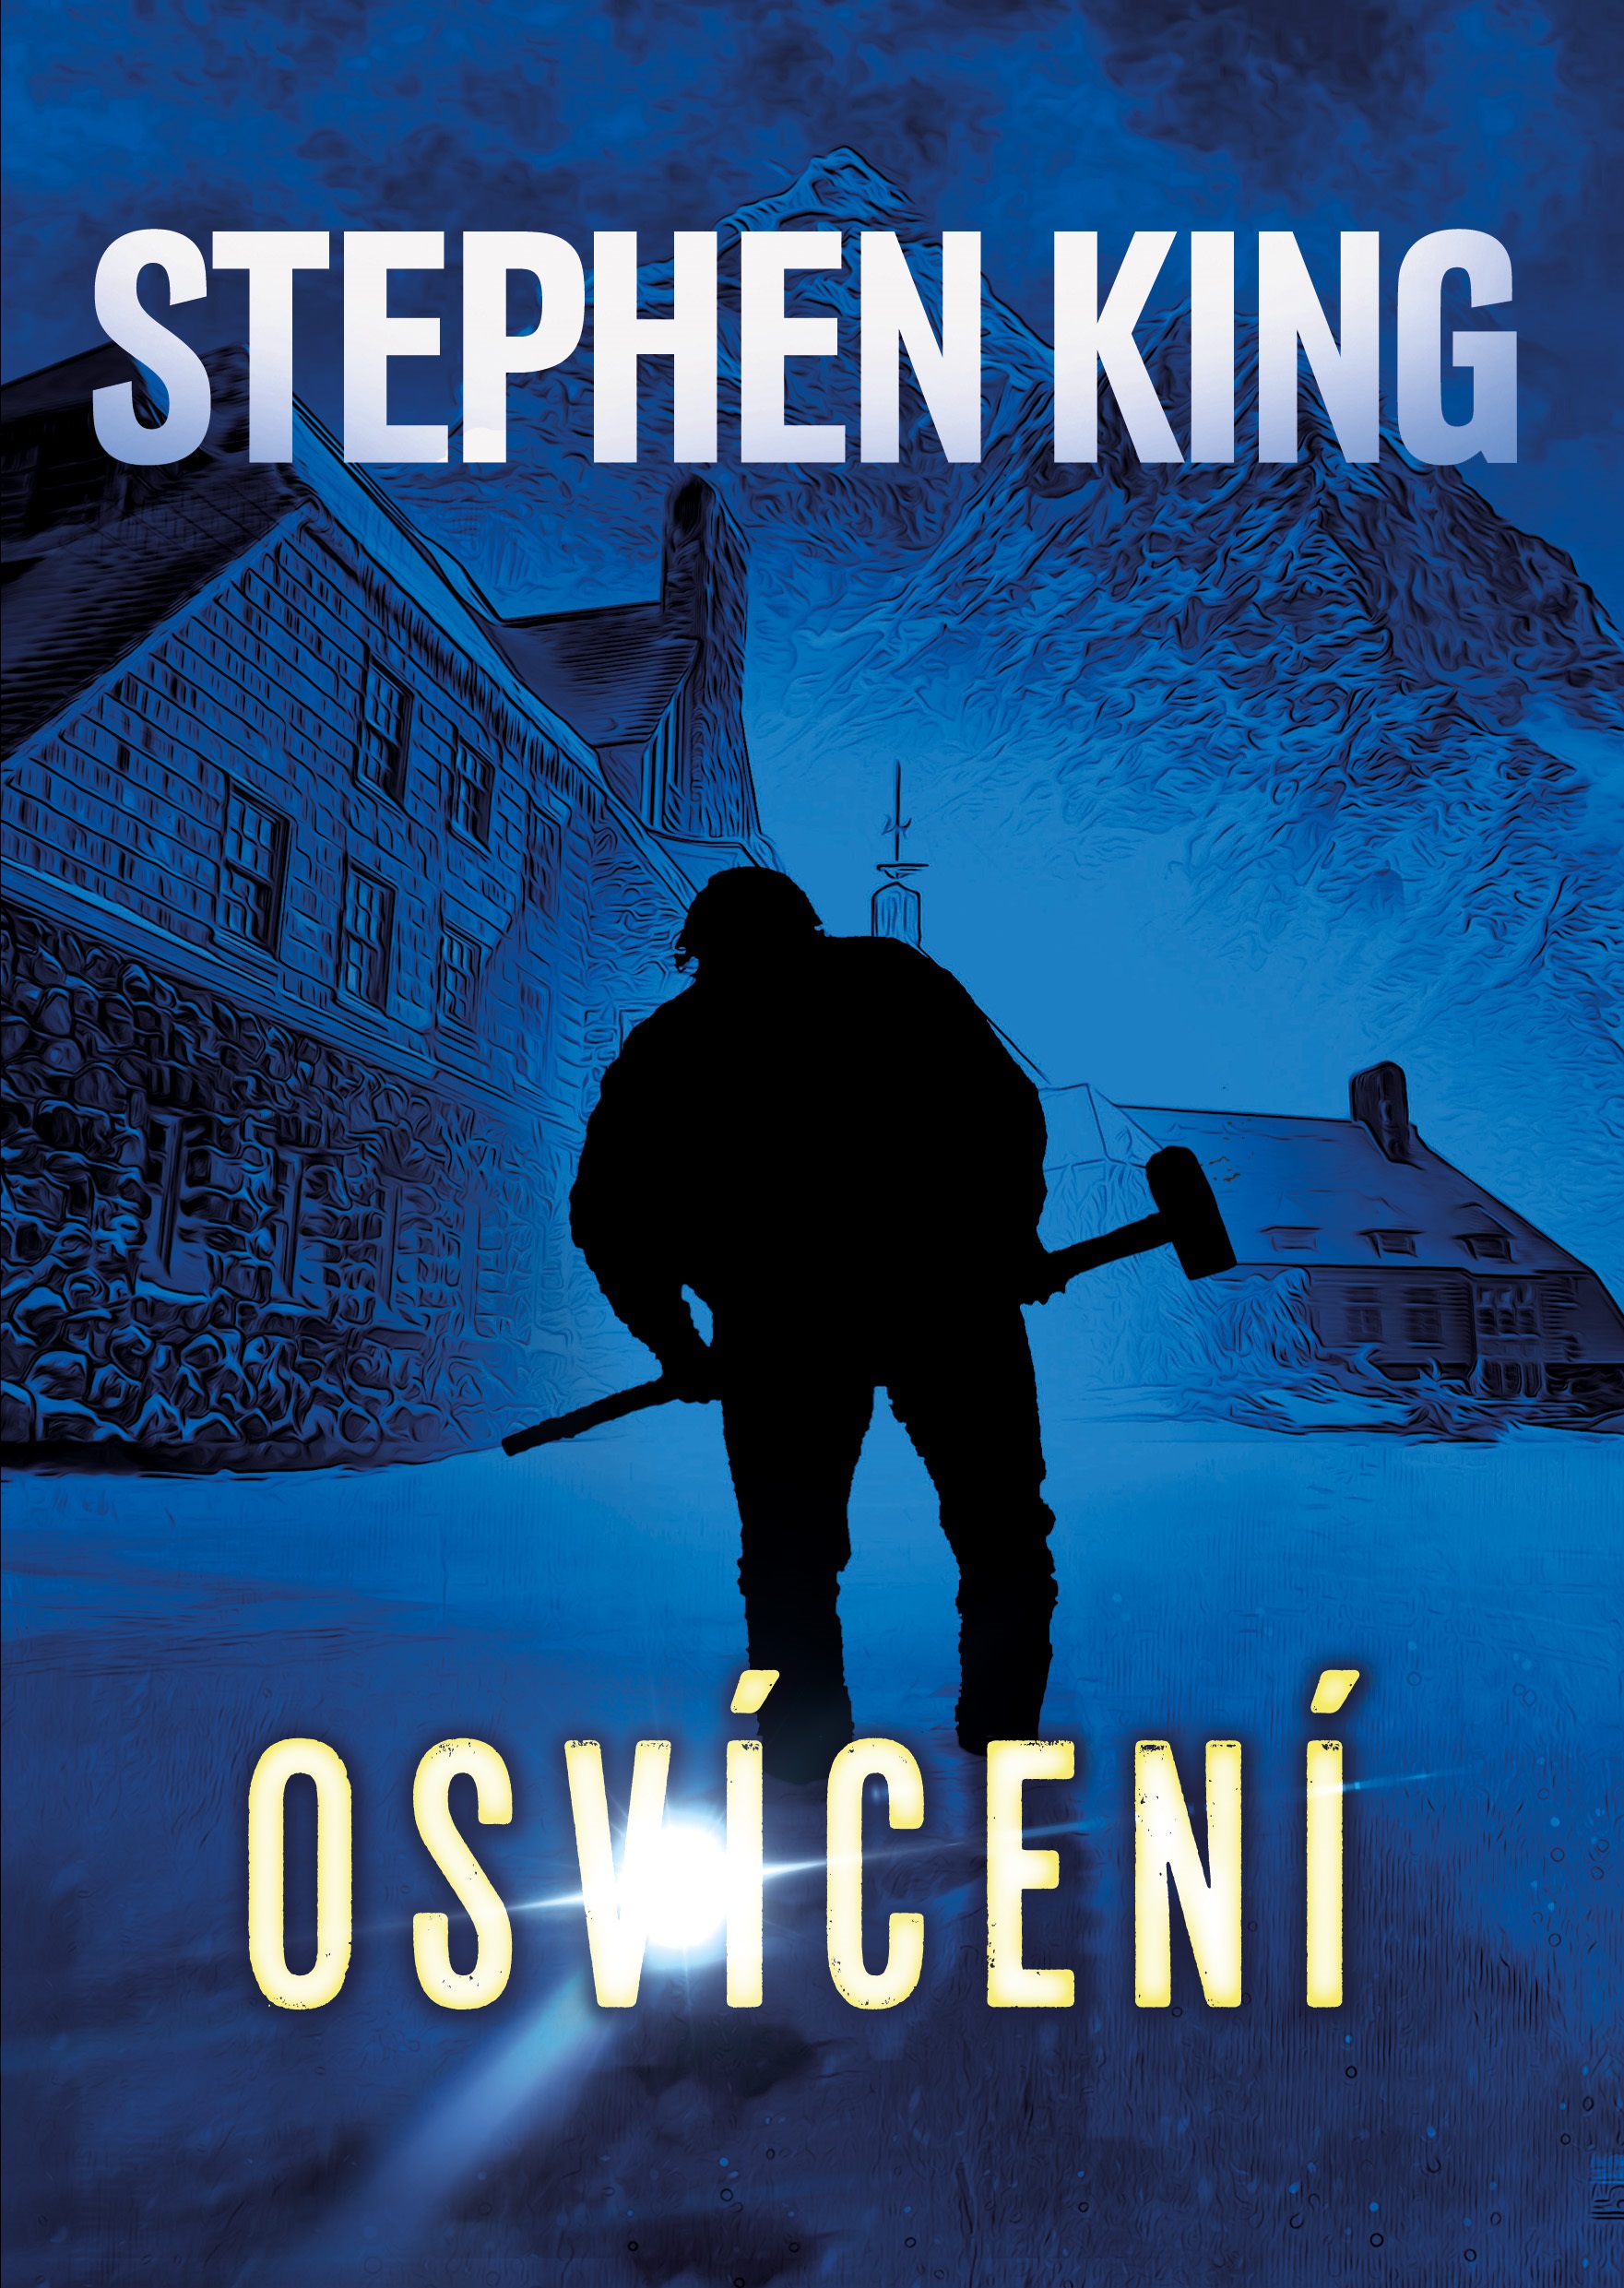 E-kniha Osvícení - Stephen King